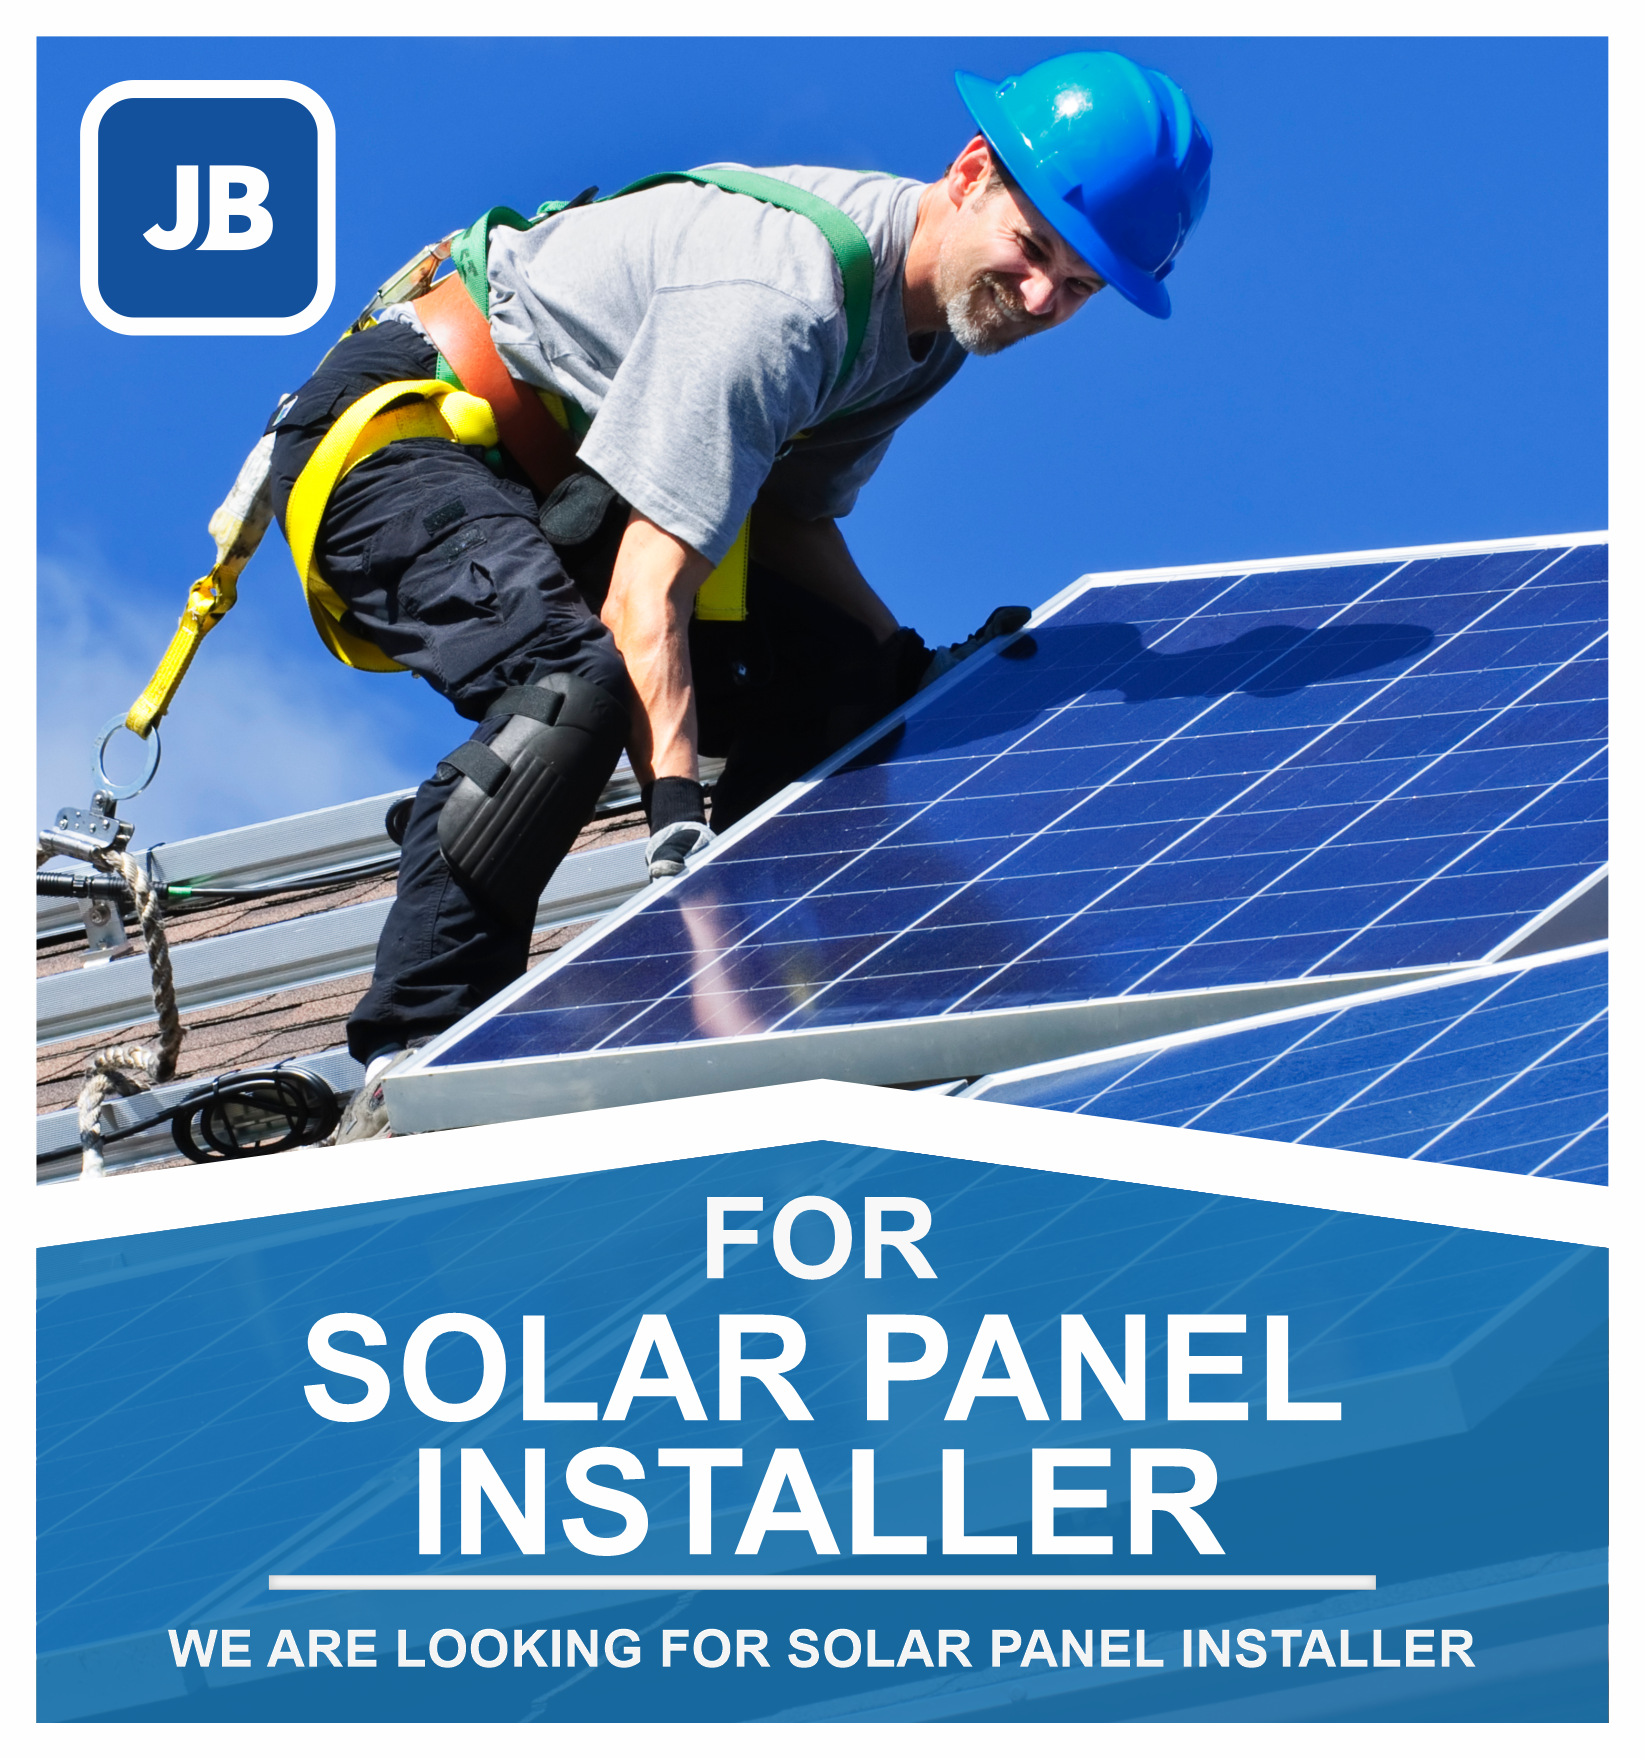 Solar Panel Installer Job